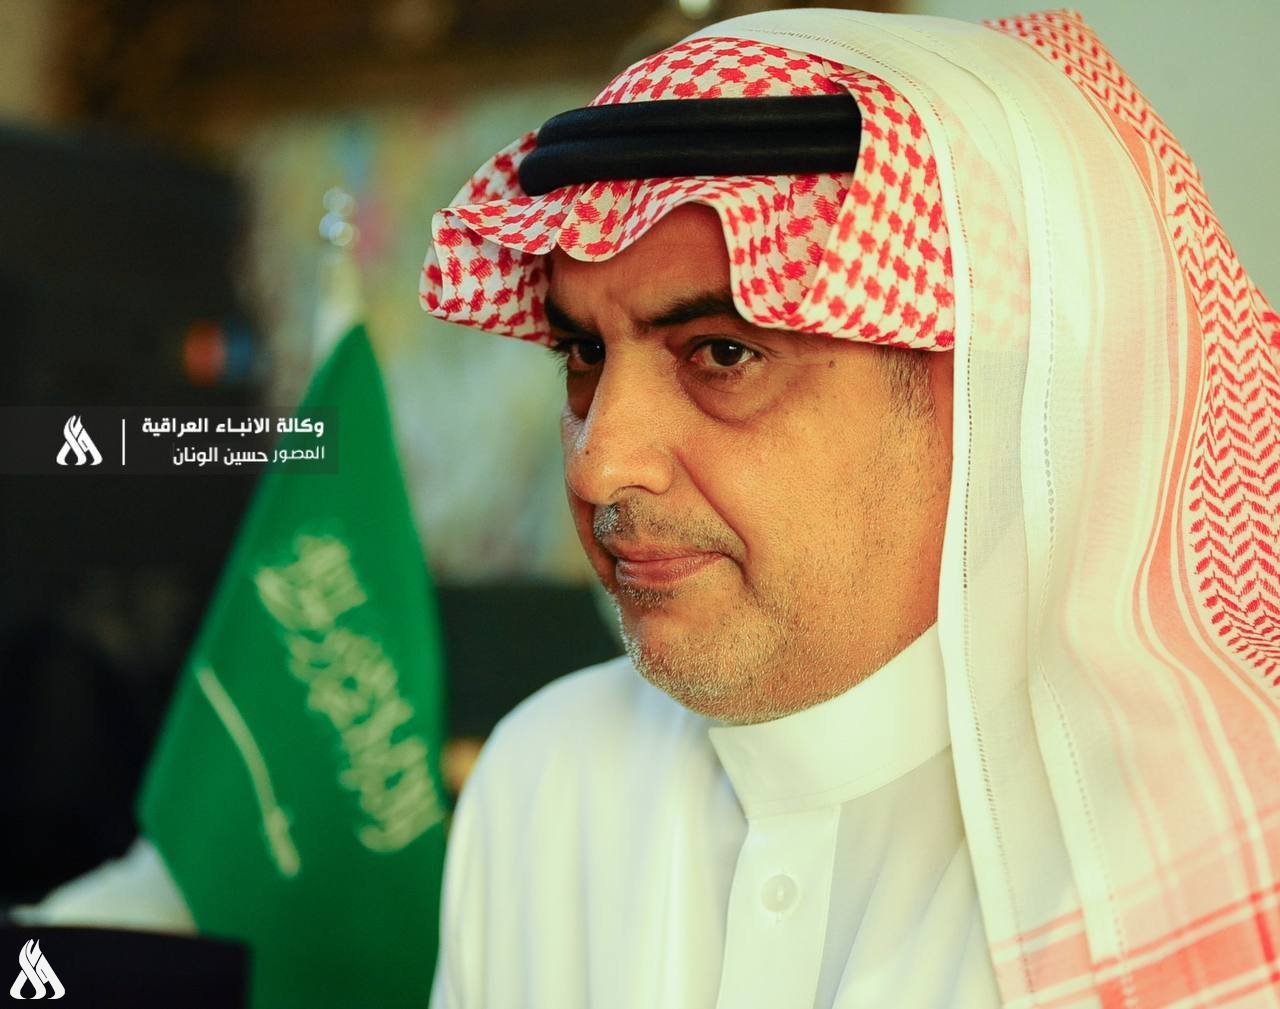 السعودية تفصح عن تطورات المدينة الرياضية بالعراق وتدعم إقامة خليجي 25 في البصرة